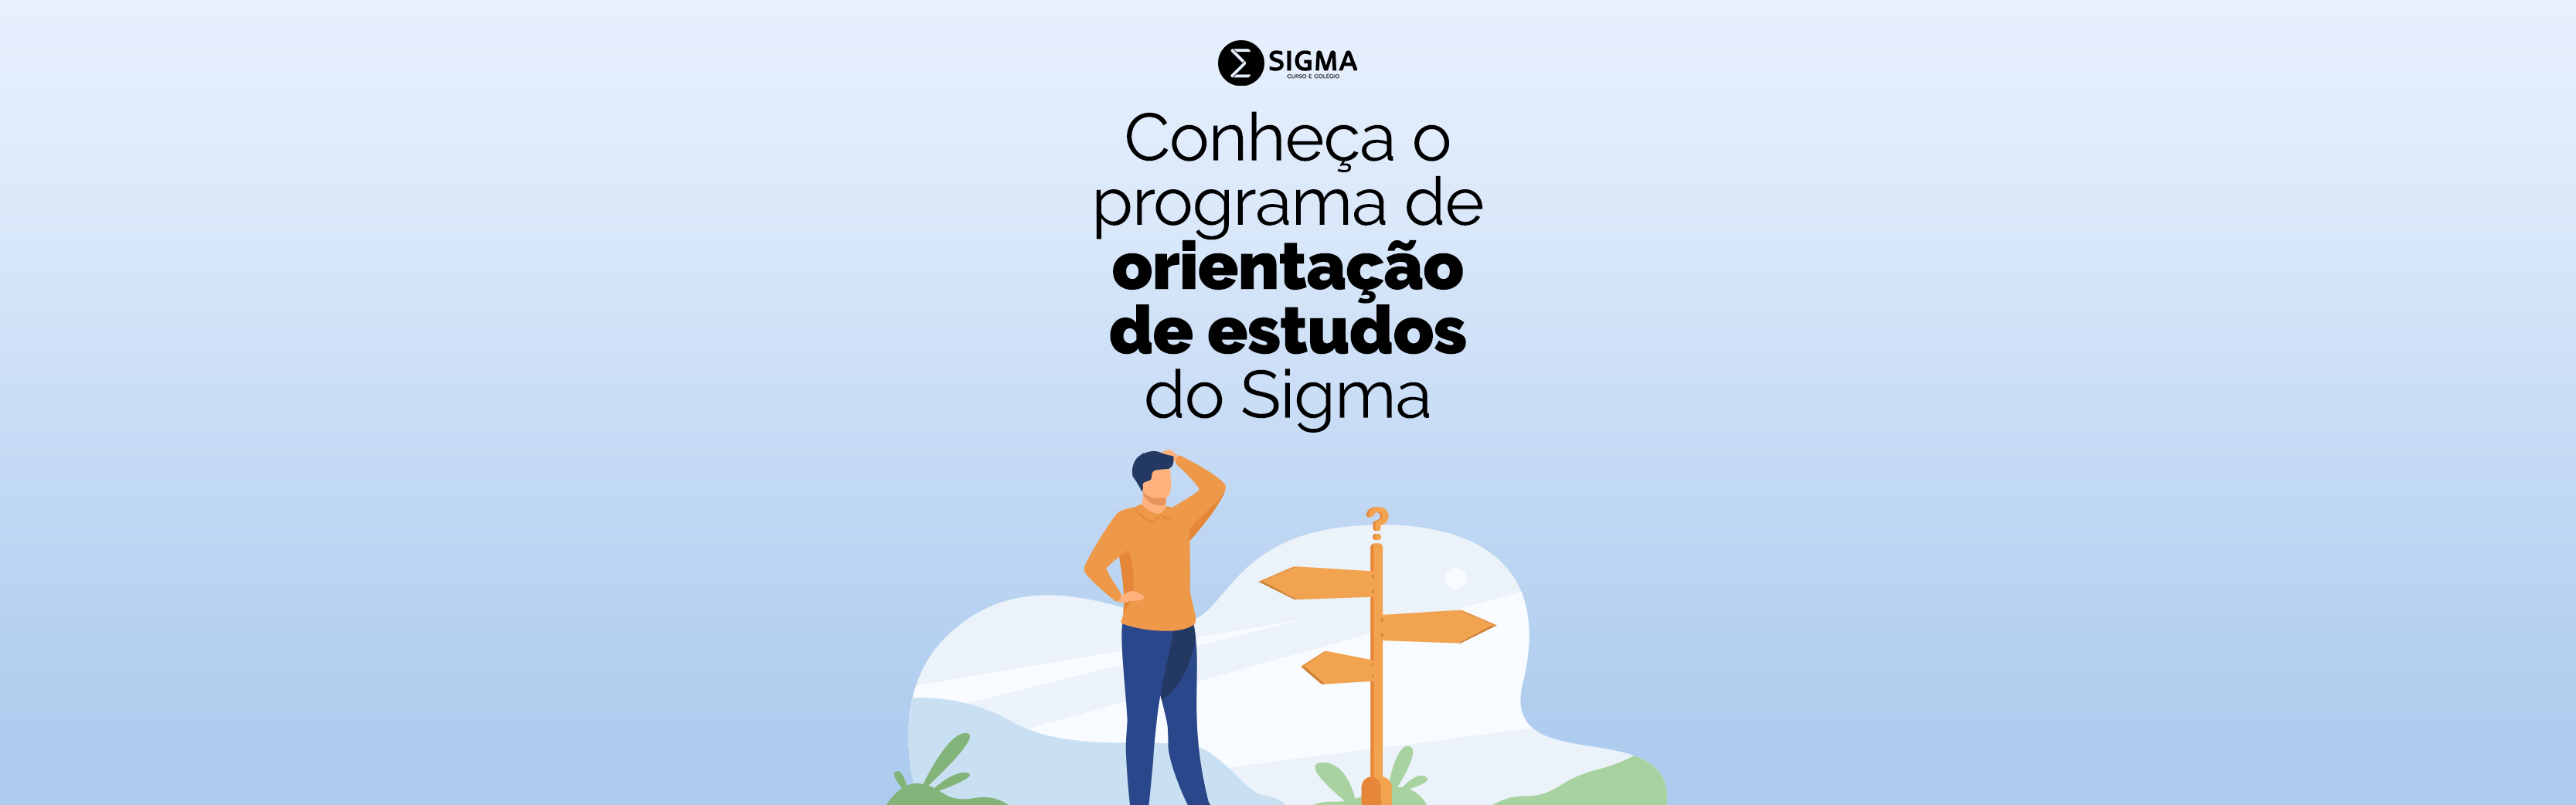 Conheça o programa de orientação de estudos do Sigma